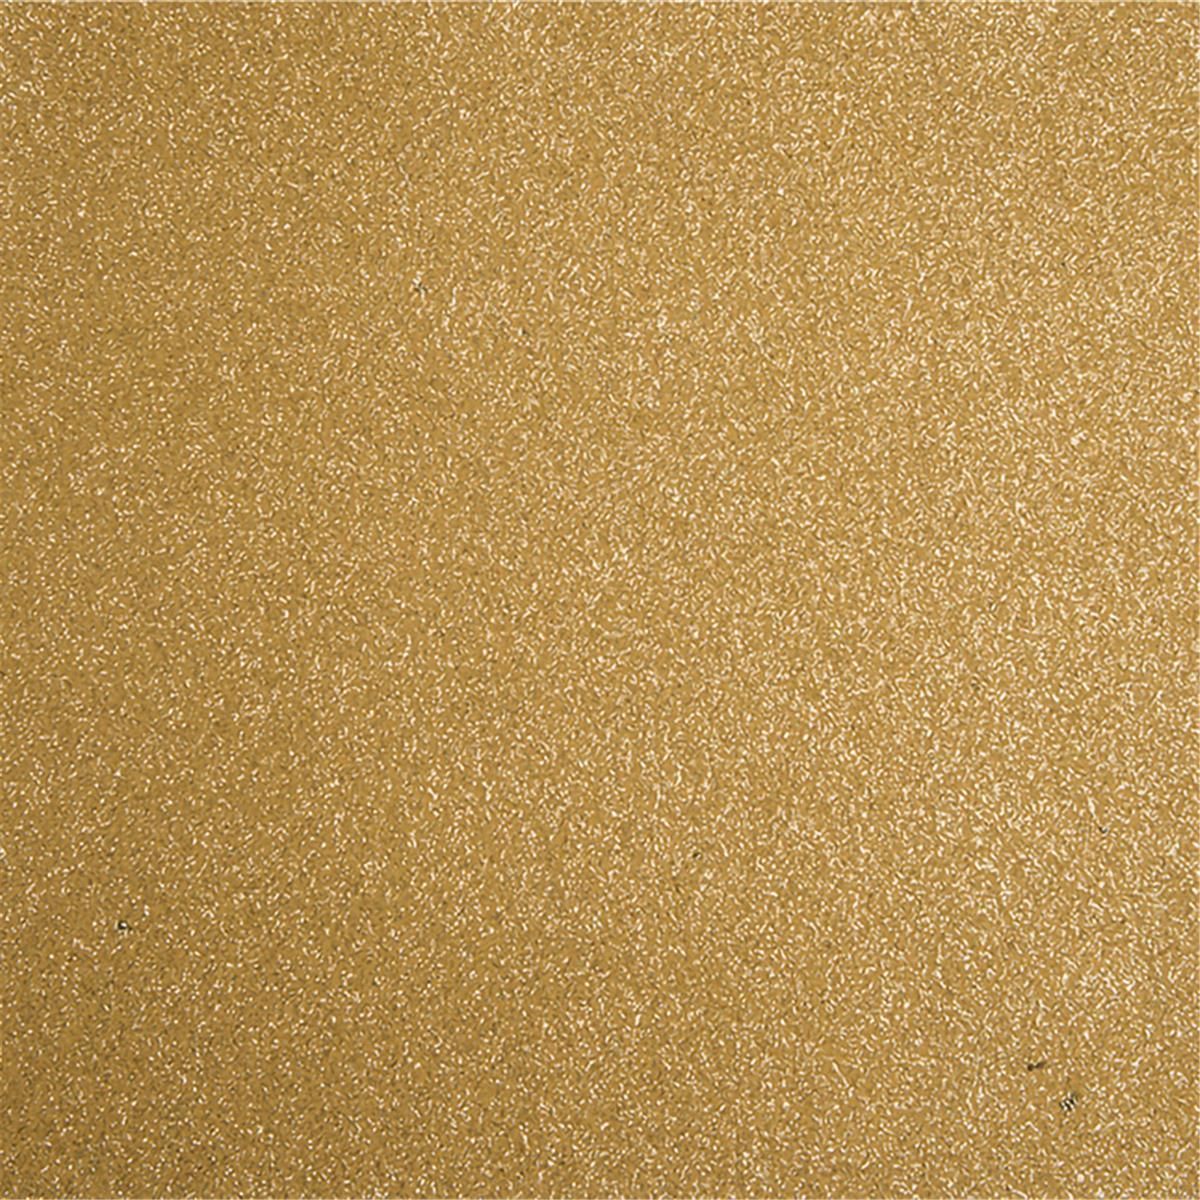 Messeboden Flacher-Nadelvlies-mit-Pailetten EXPOGLITTER Gold 5033 ohne Schutzfolie - Rollenbreite 200 cm